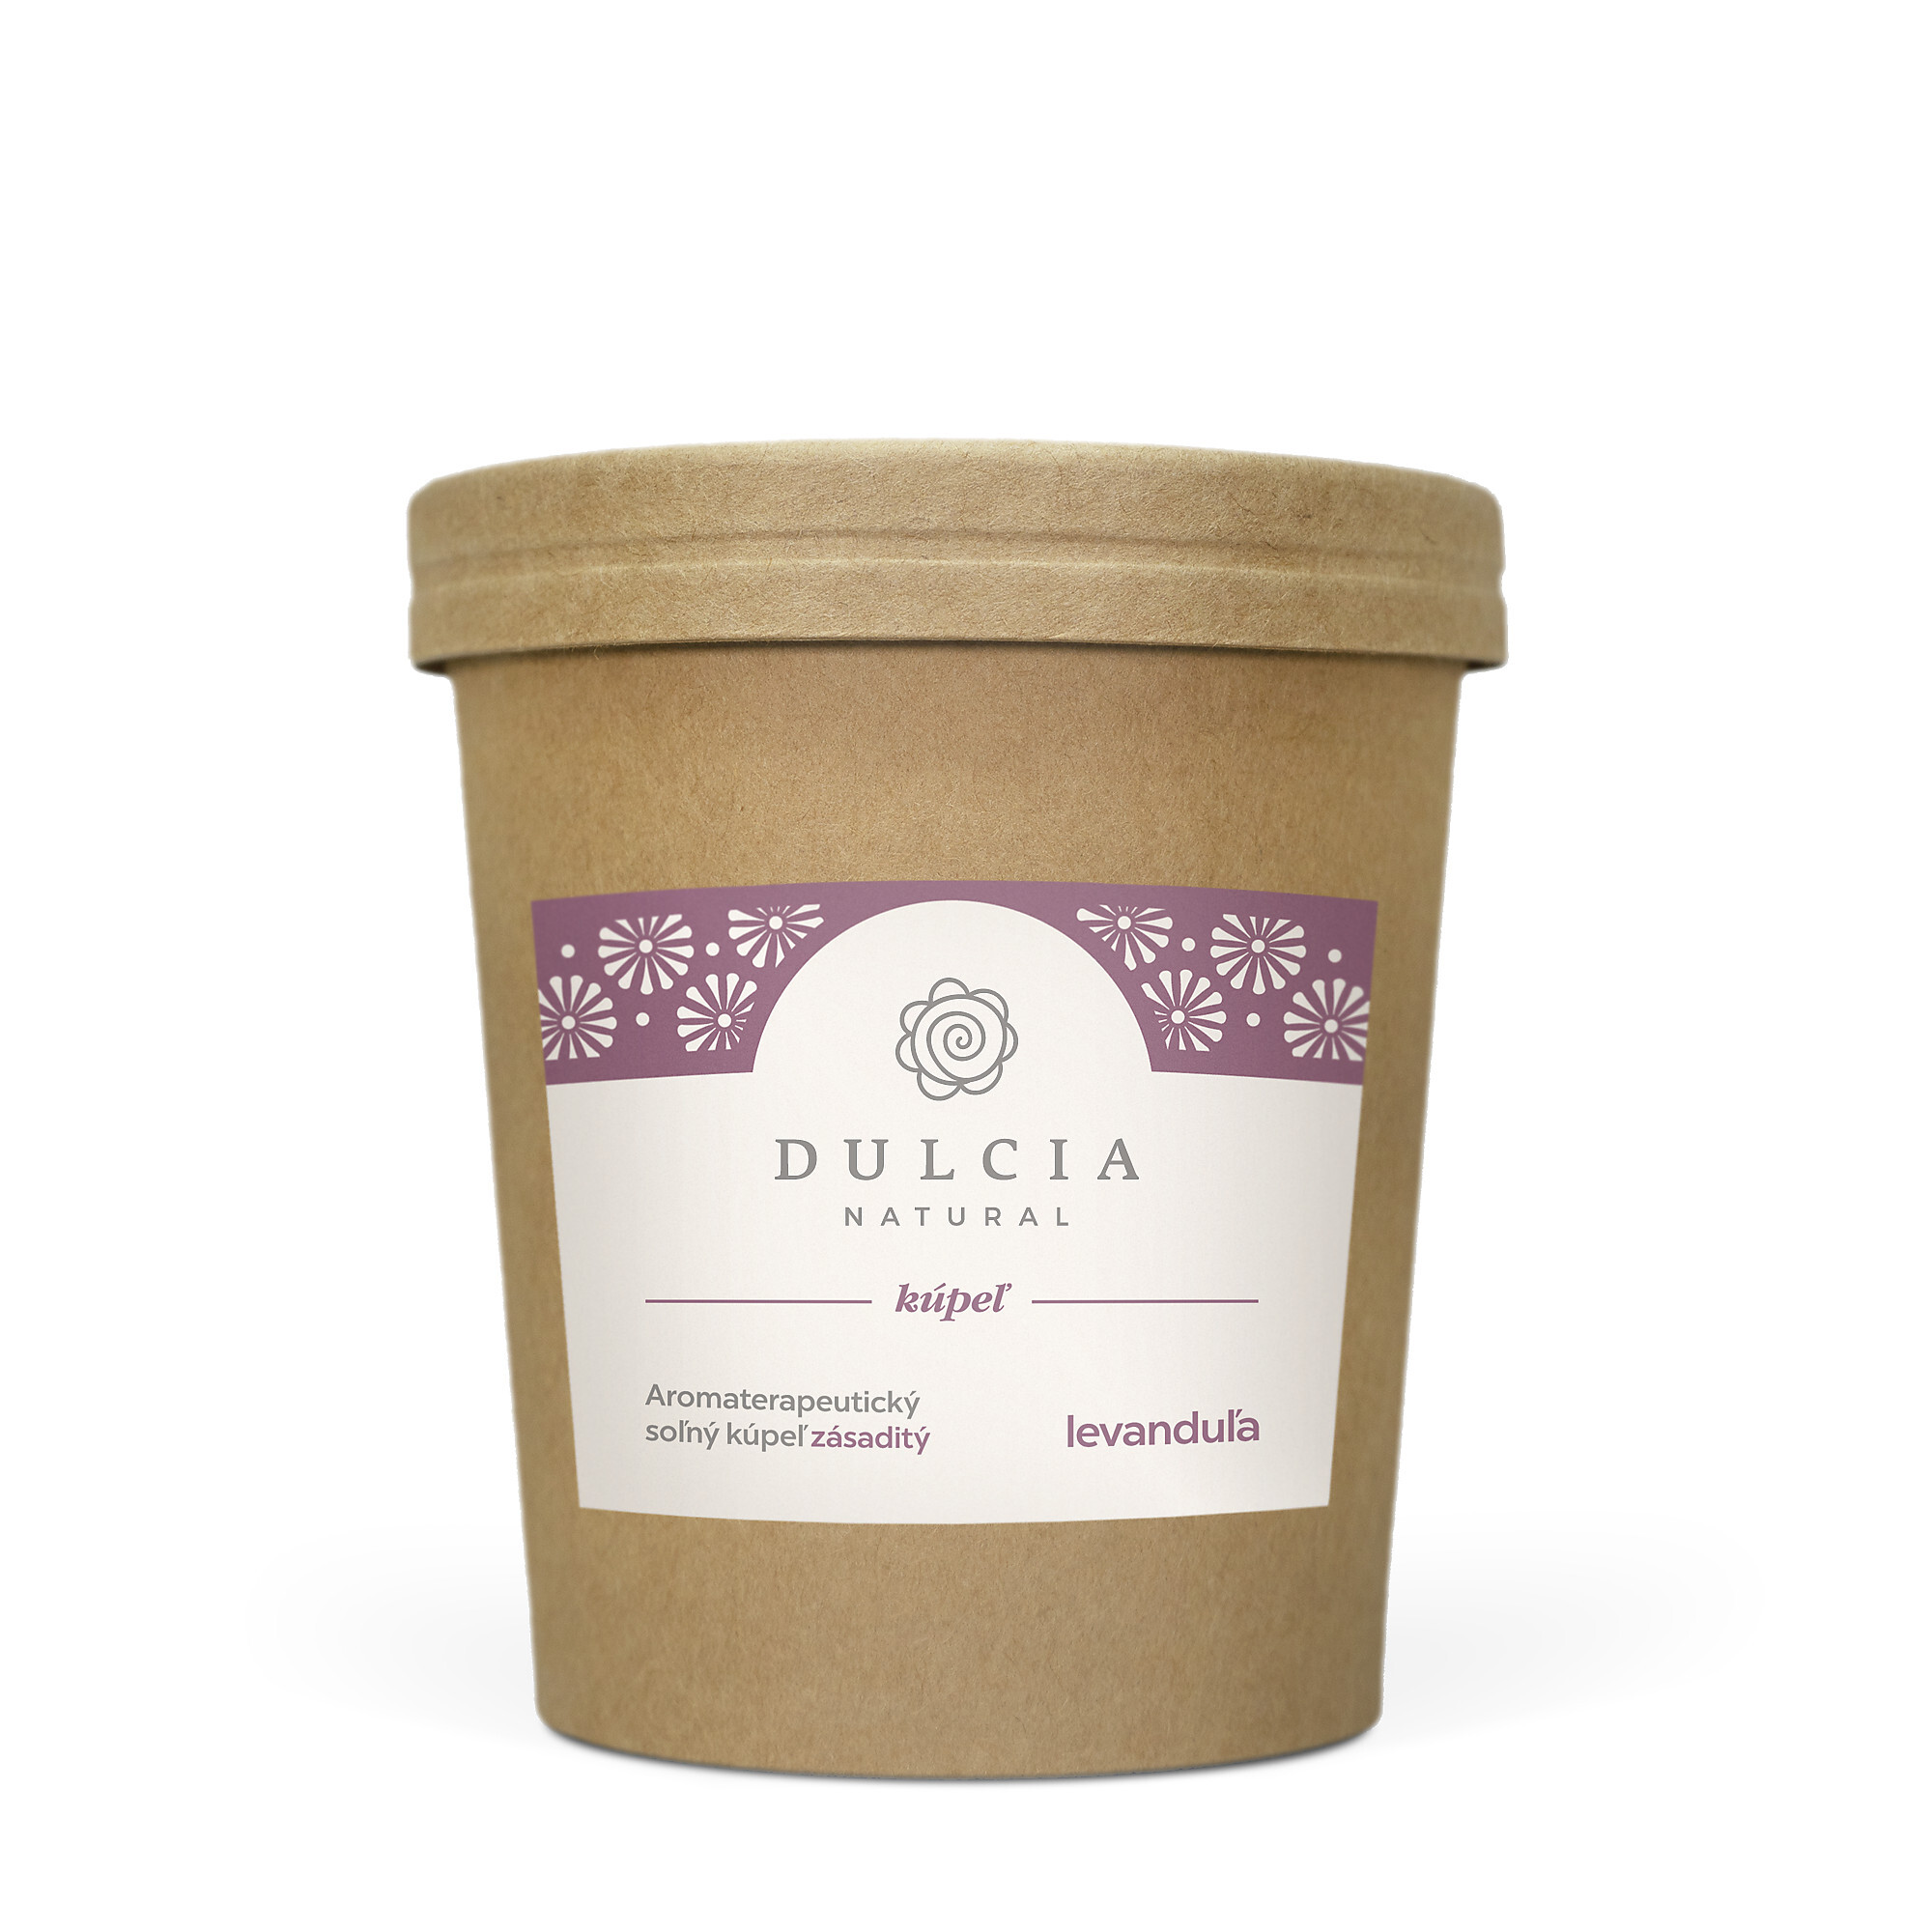 DULCIA natural Aromaterapeutický soľný kúpeľ - levanduľa 550 g + 2 mesiace na vrátenie tovaru